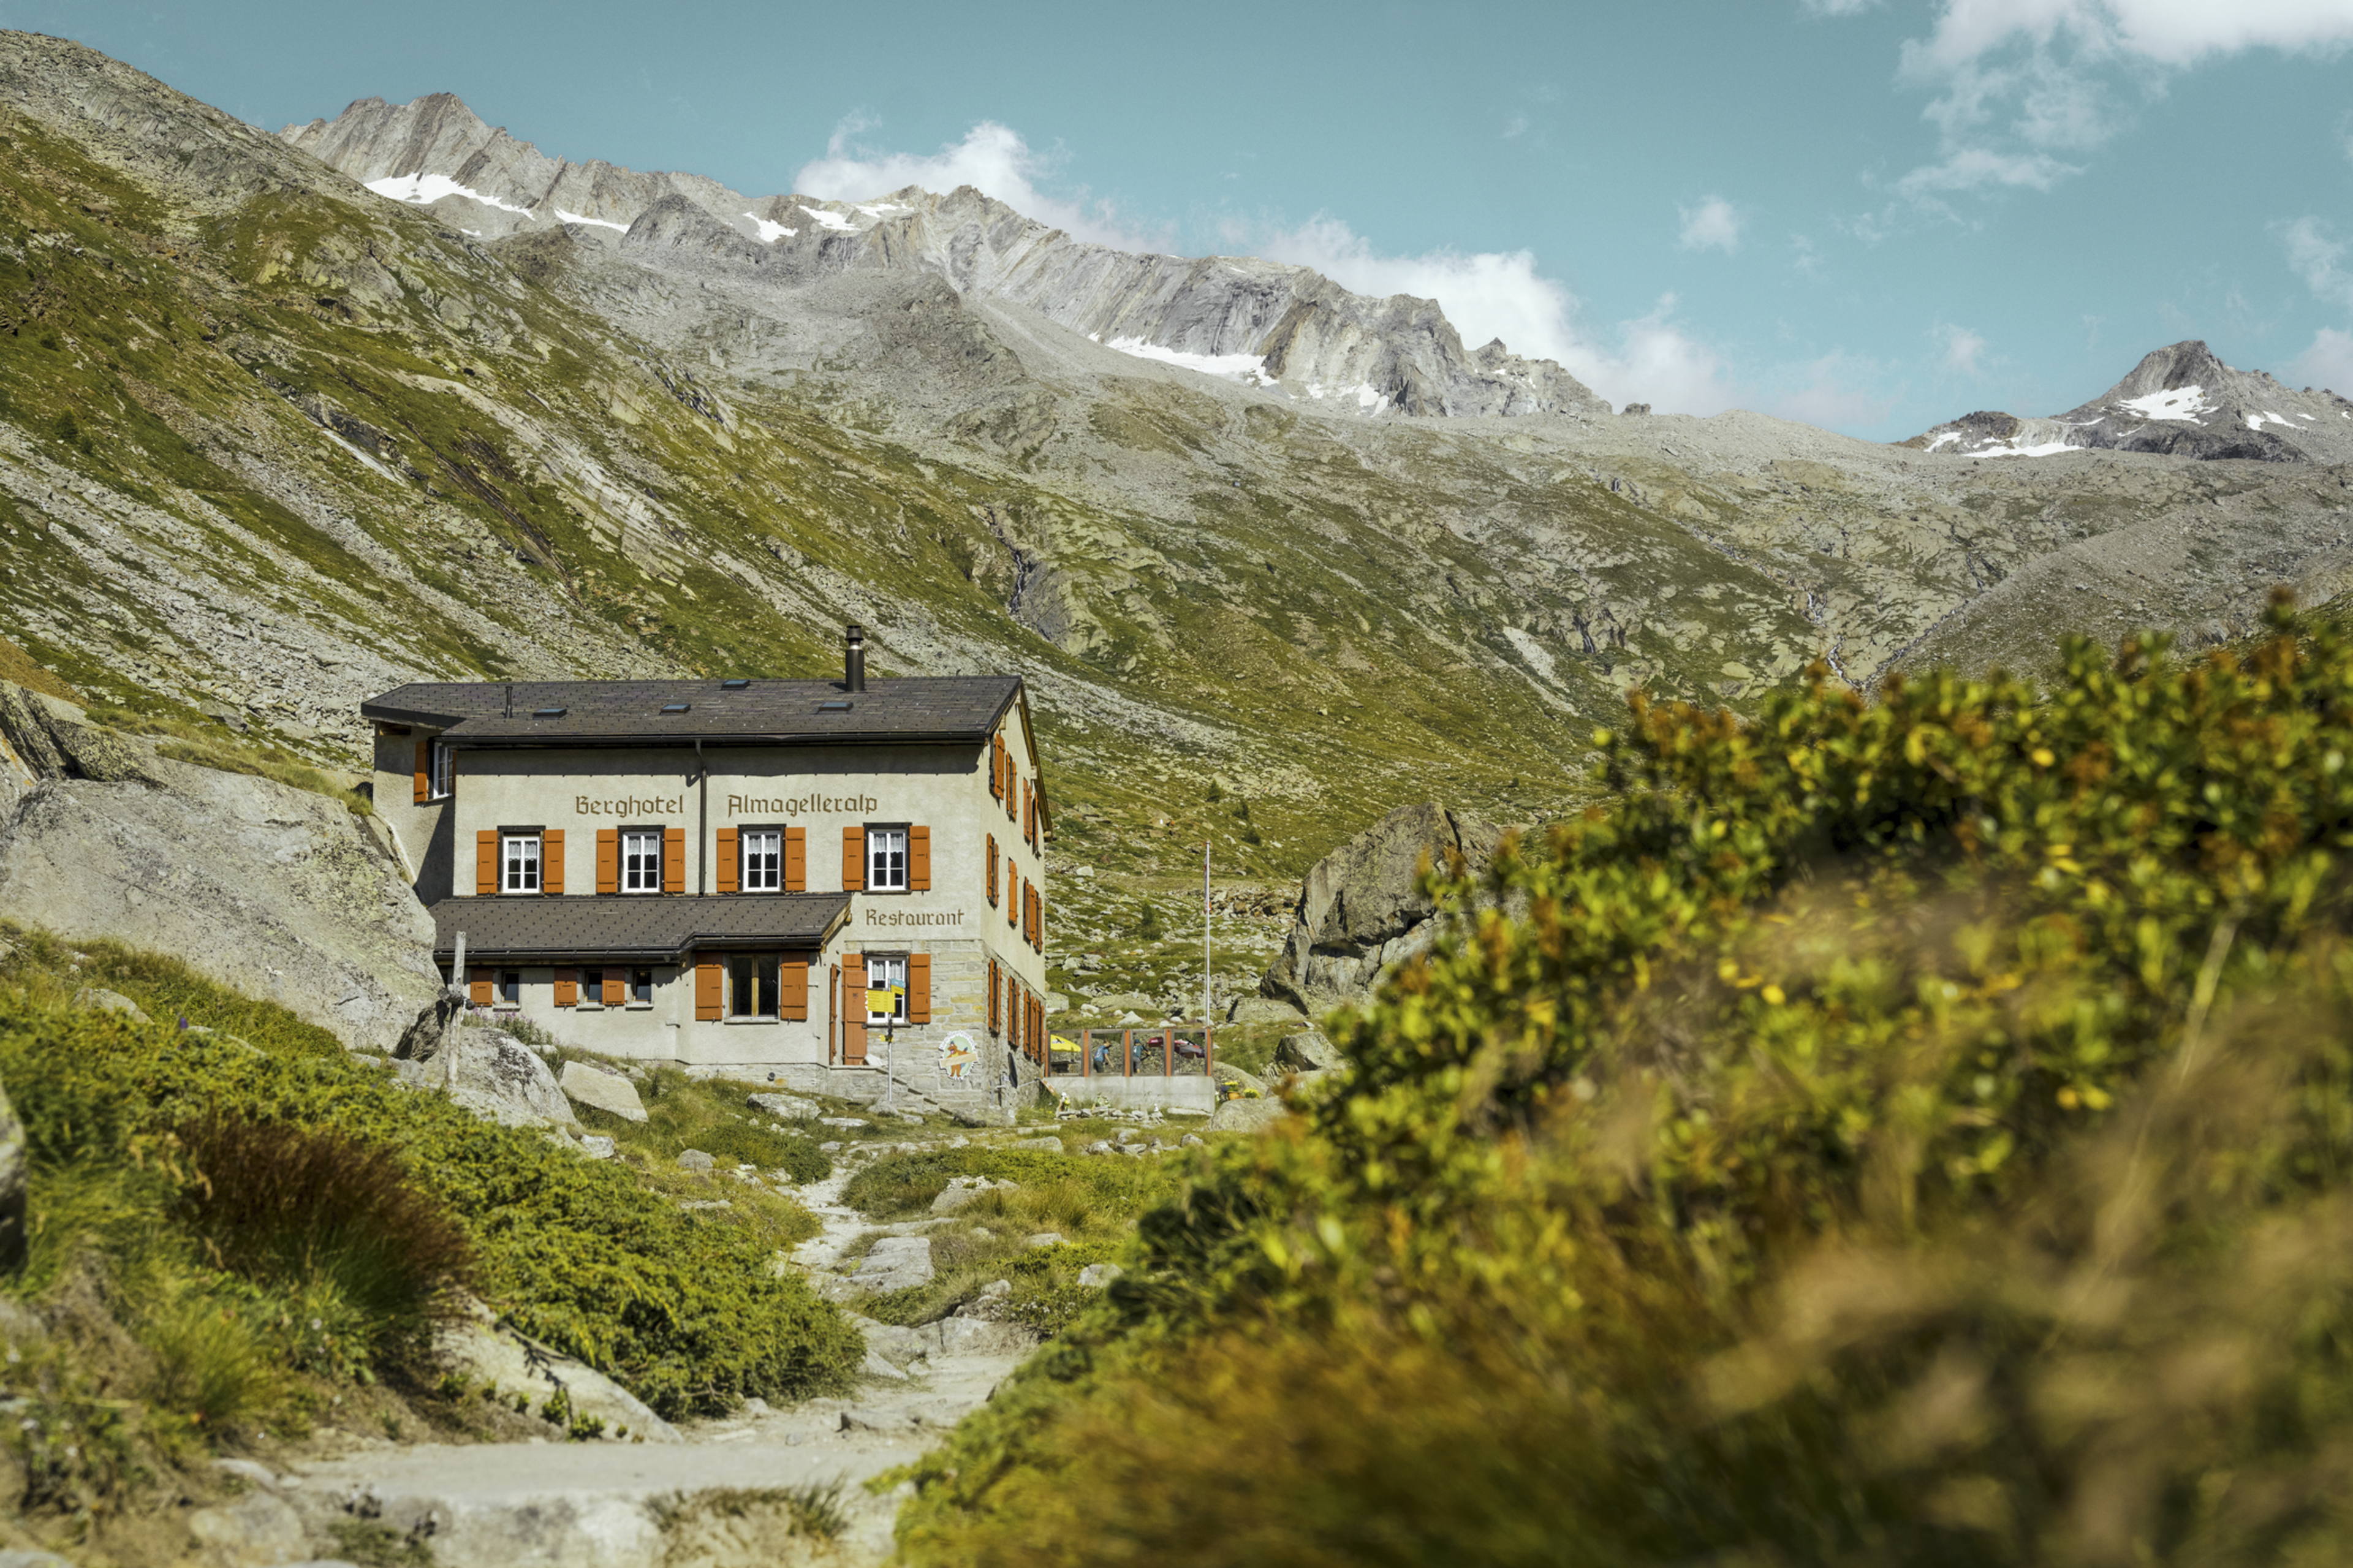 Un repos bien mérité au Berghotel Almagelleralp, à 2200 mètres d’altitude.